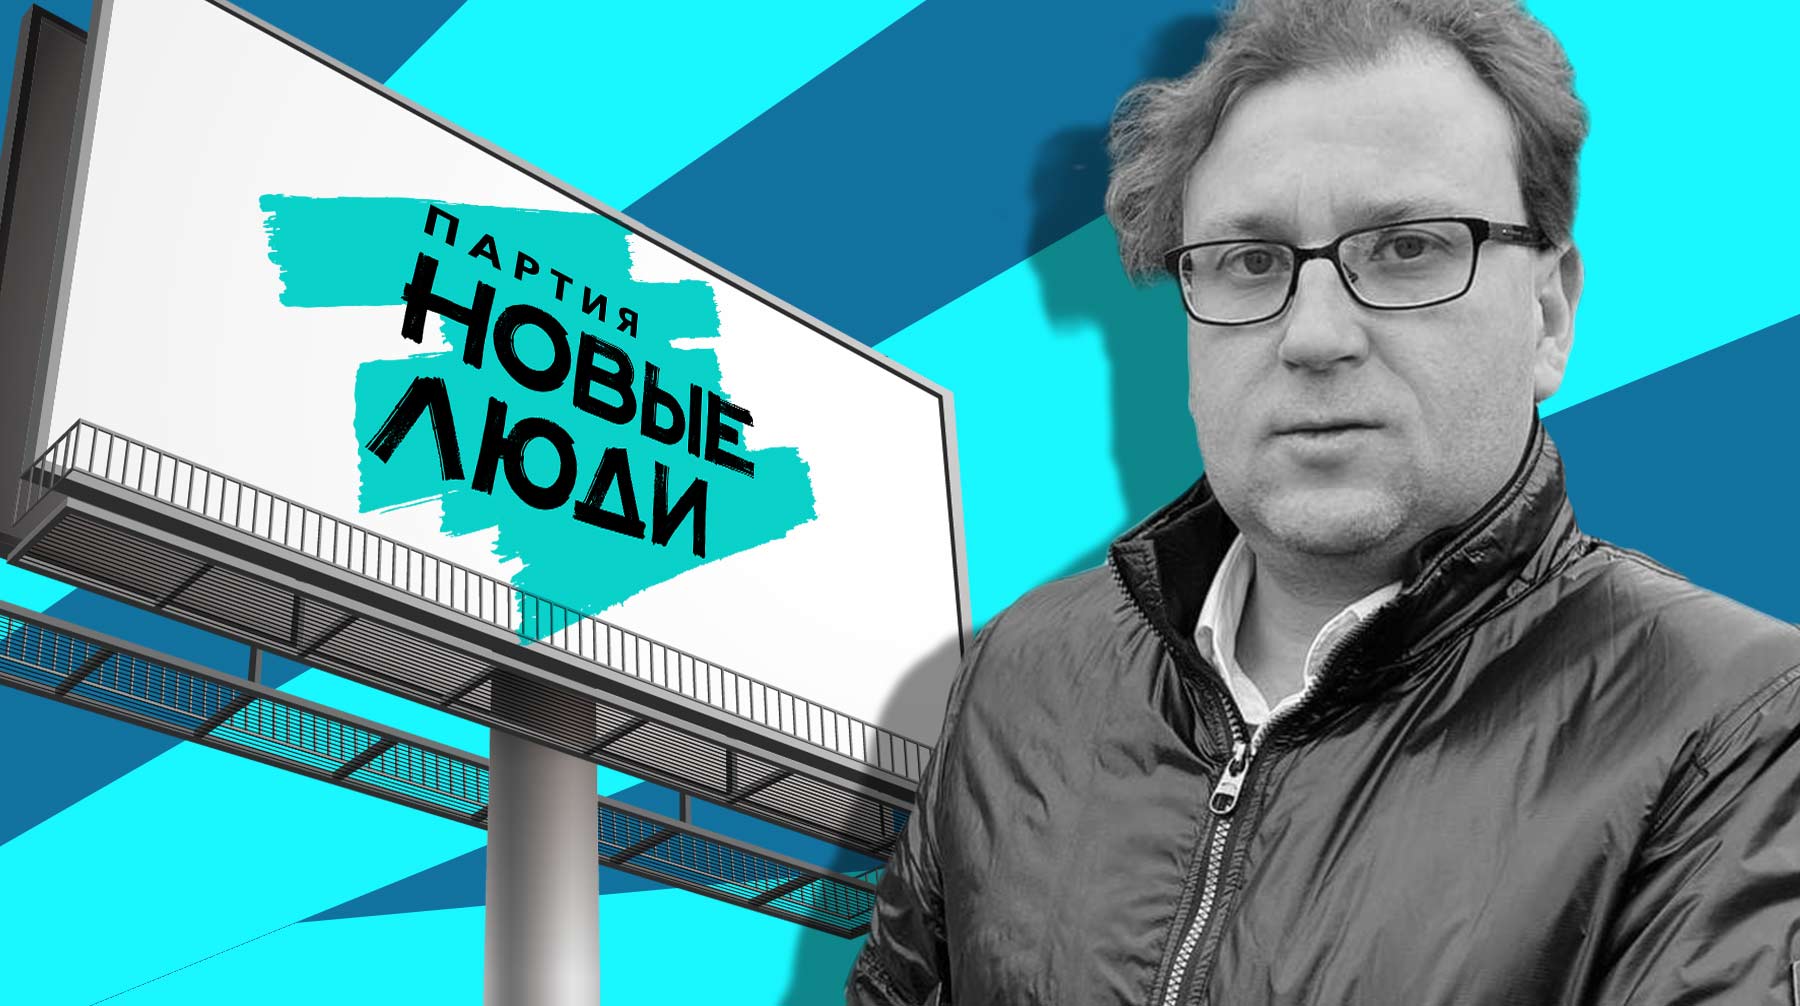 Нижегородский депутат разместил на 15 билбордах рекламу своего Telegram-канала и собрал 100 подписчиков